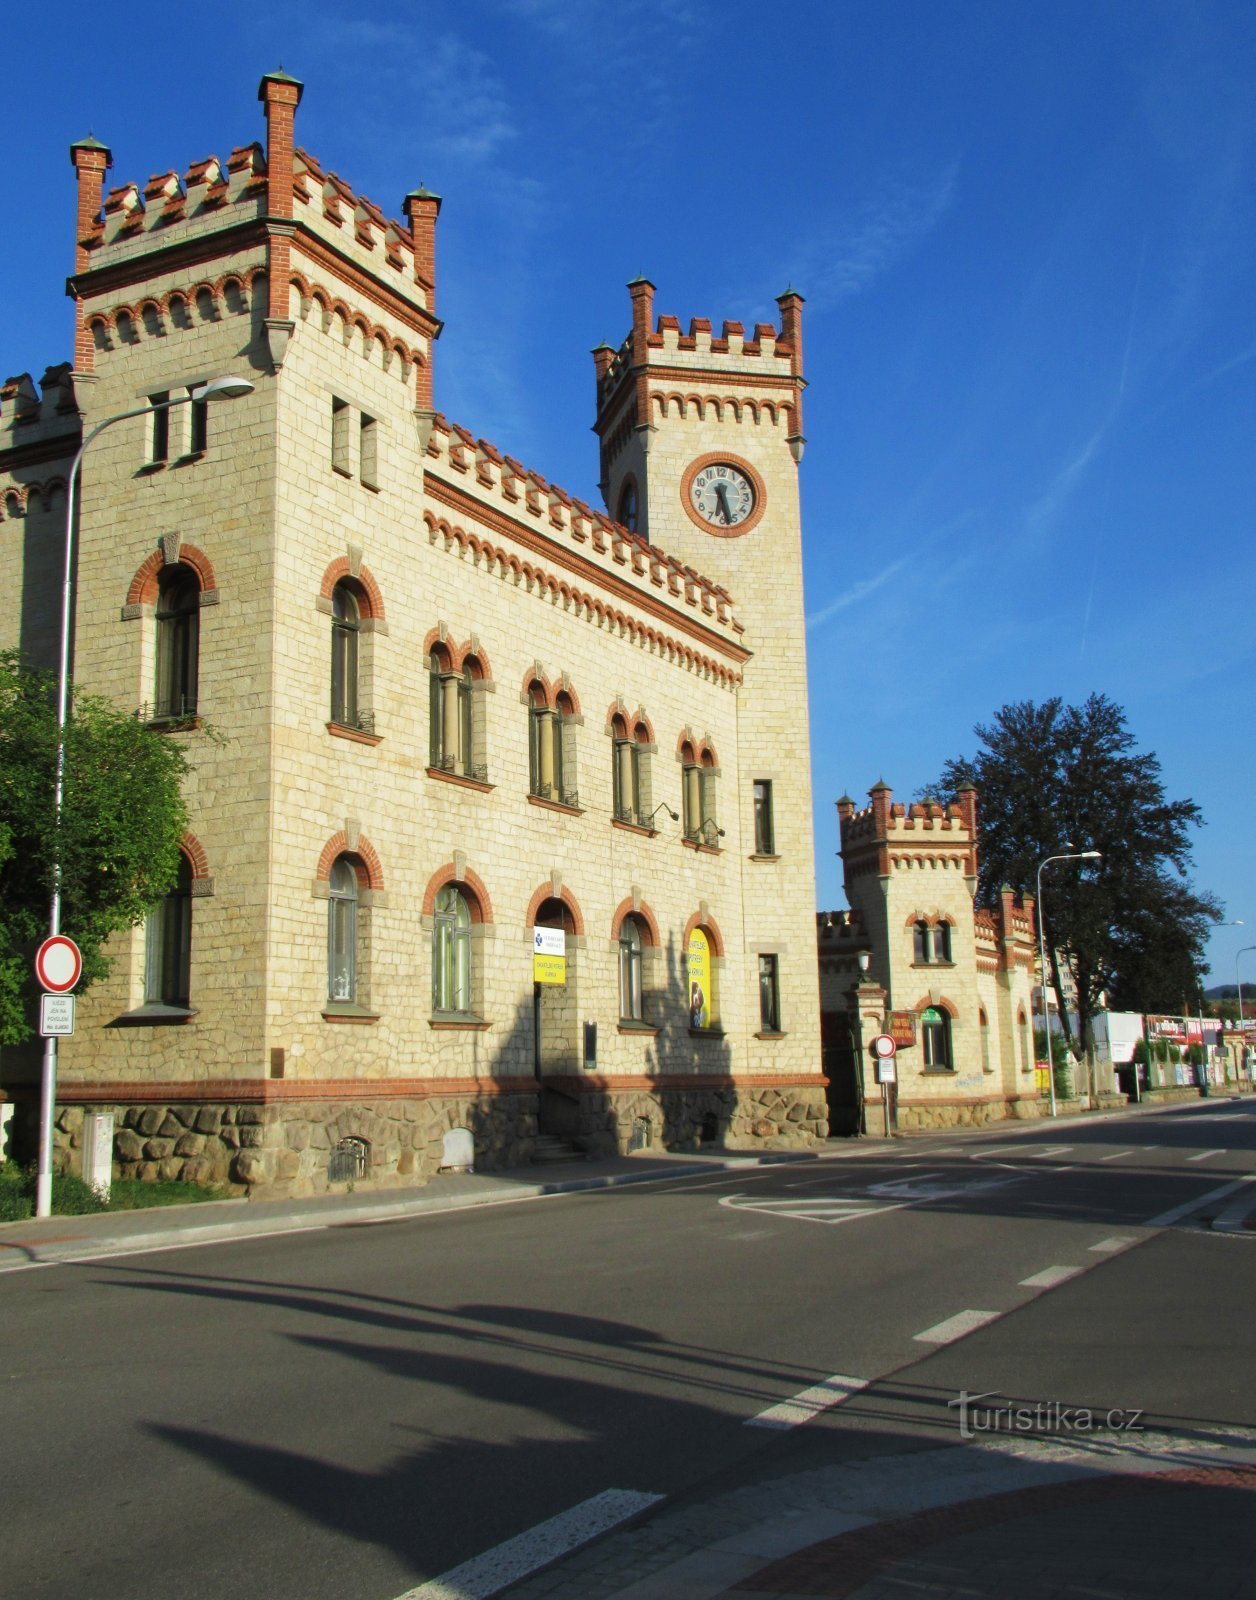 The historical building of the Ježek company in Blansko